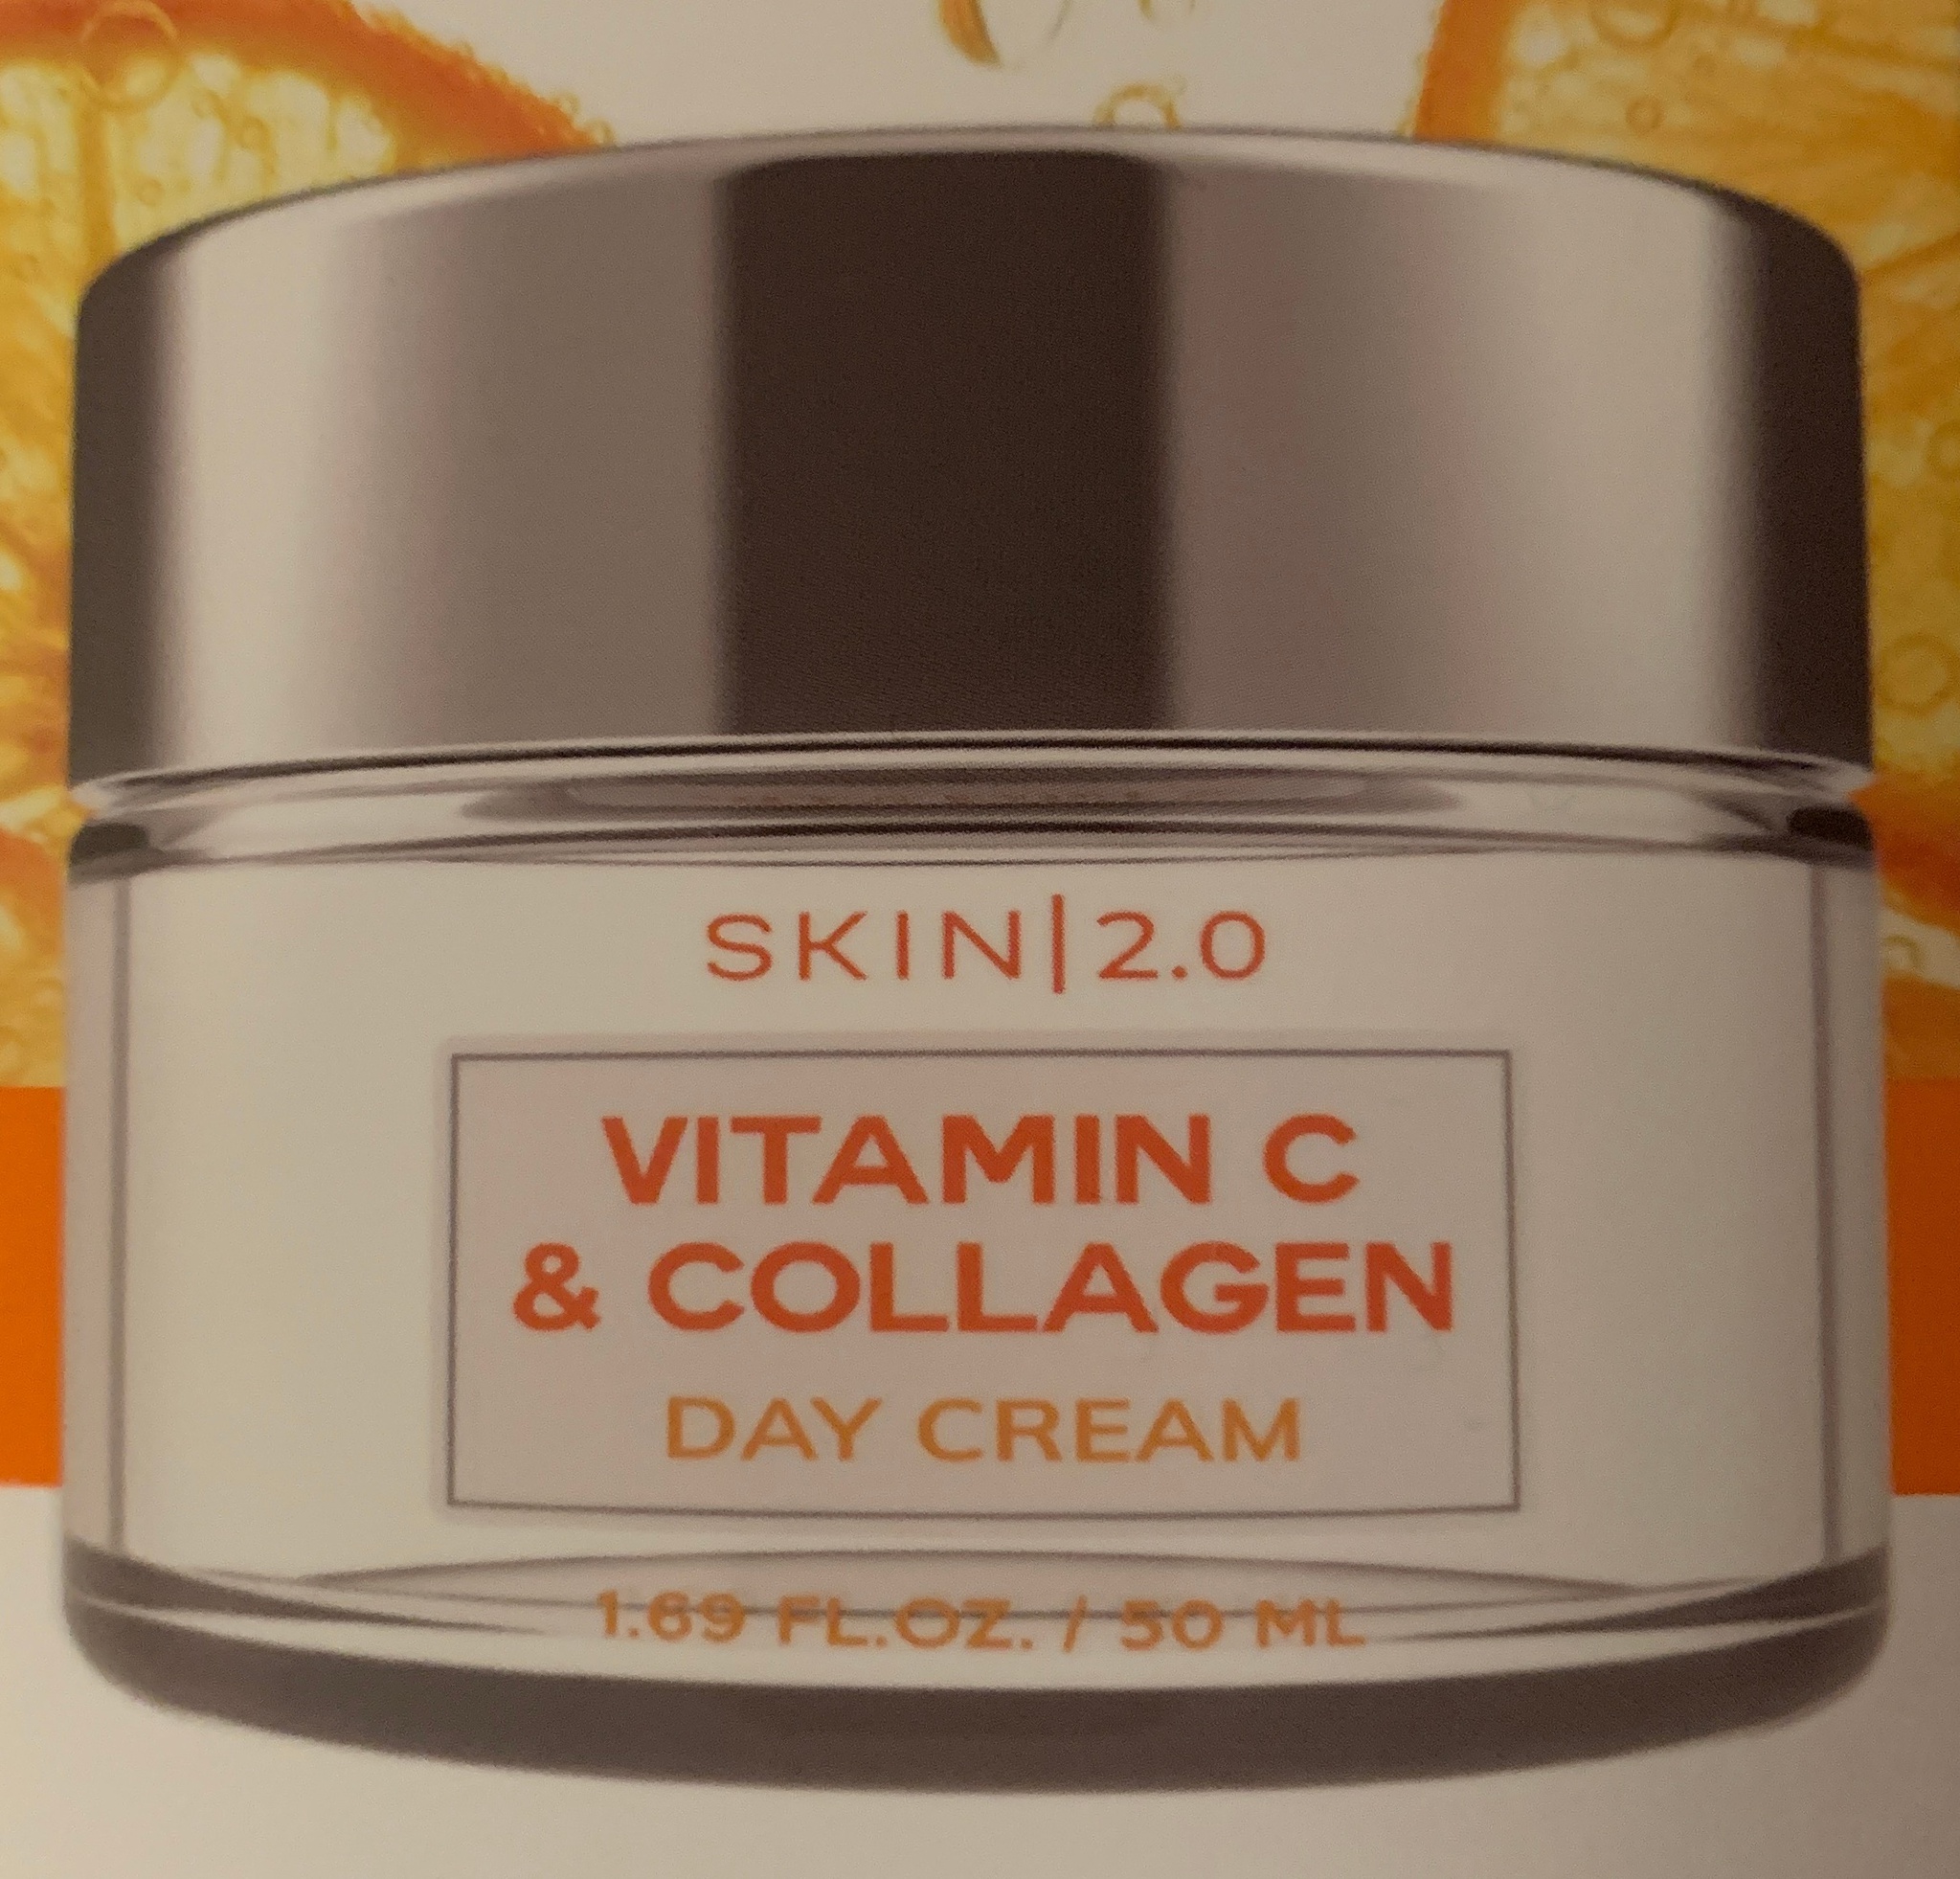 Skin 2.0 Vitamin C & Collagen